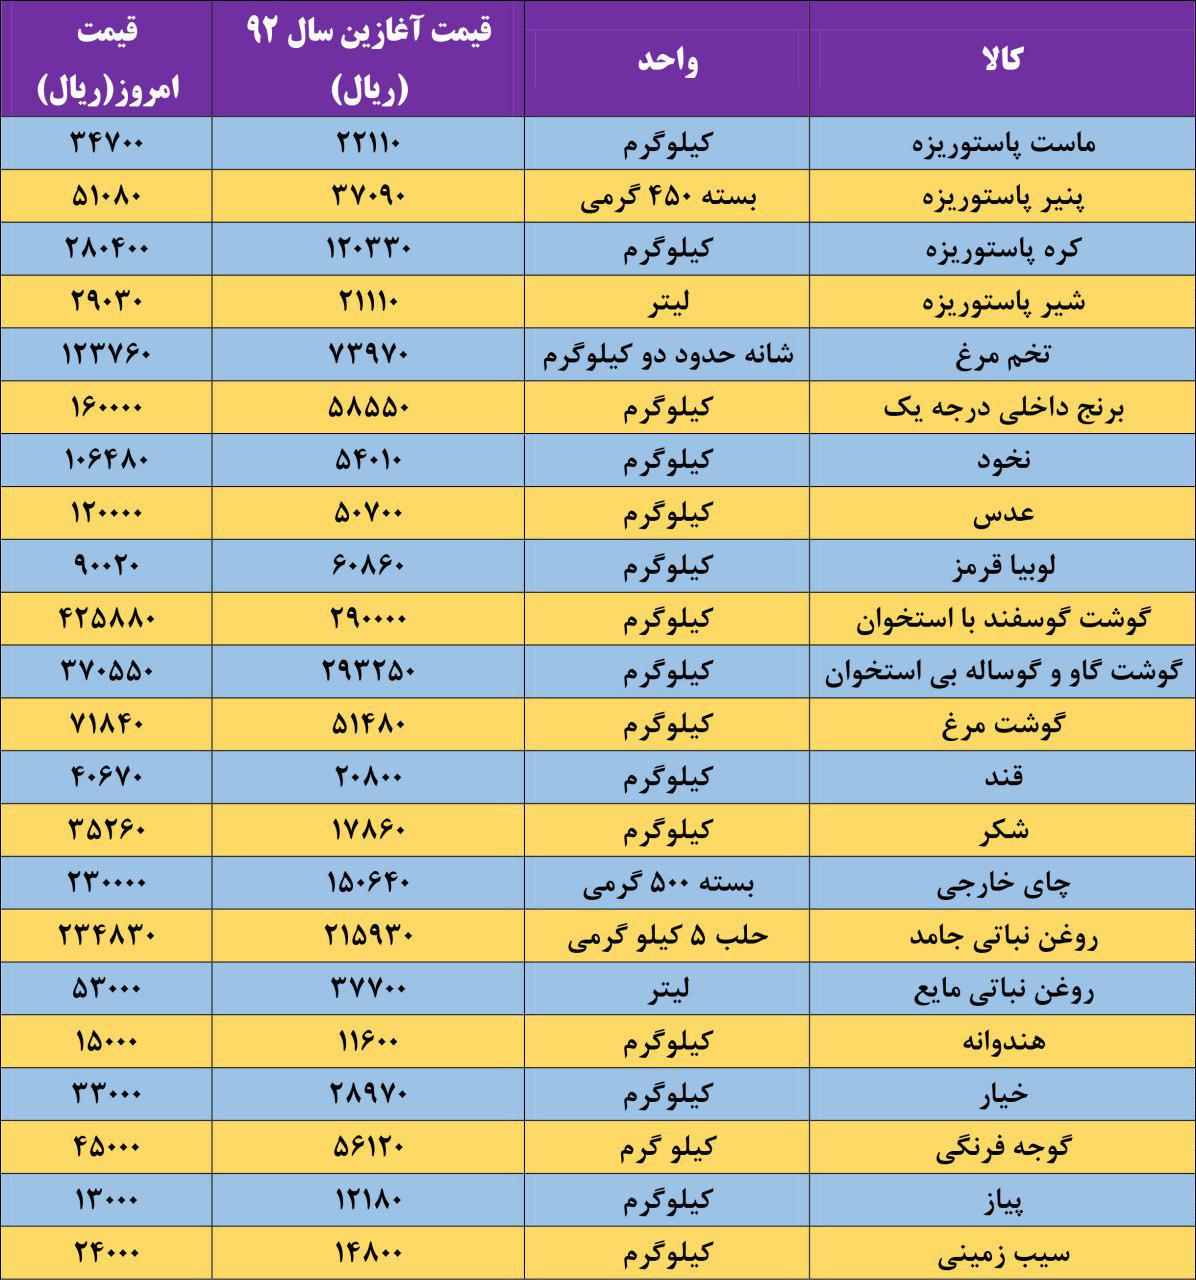 افزایش قابل توجه قیمت کالاهای اساسی مردم در دولت روحانی/ سبد مصرفی مردم ۴۰ تا ۱۴۰ درصد گران شد+ جدول